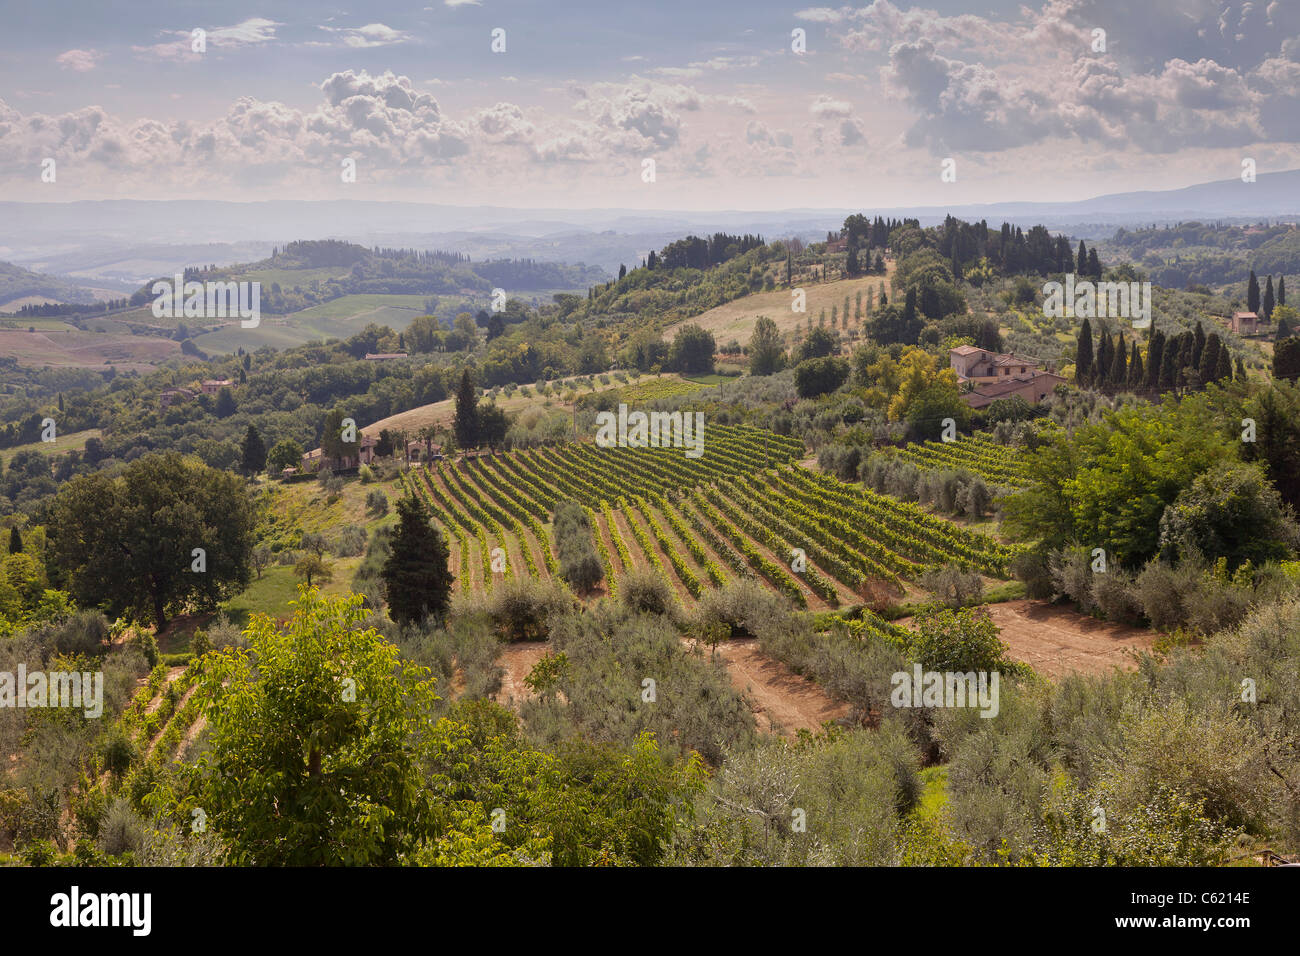 Vue panoramique sur la campagne toscane typique vue de San Gimignano, Italie, collines ondulantes Banque D'Images